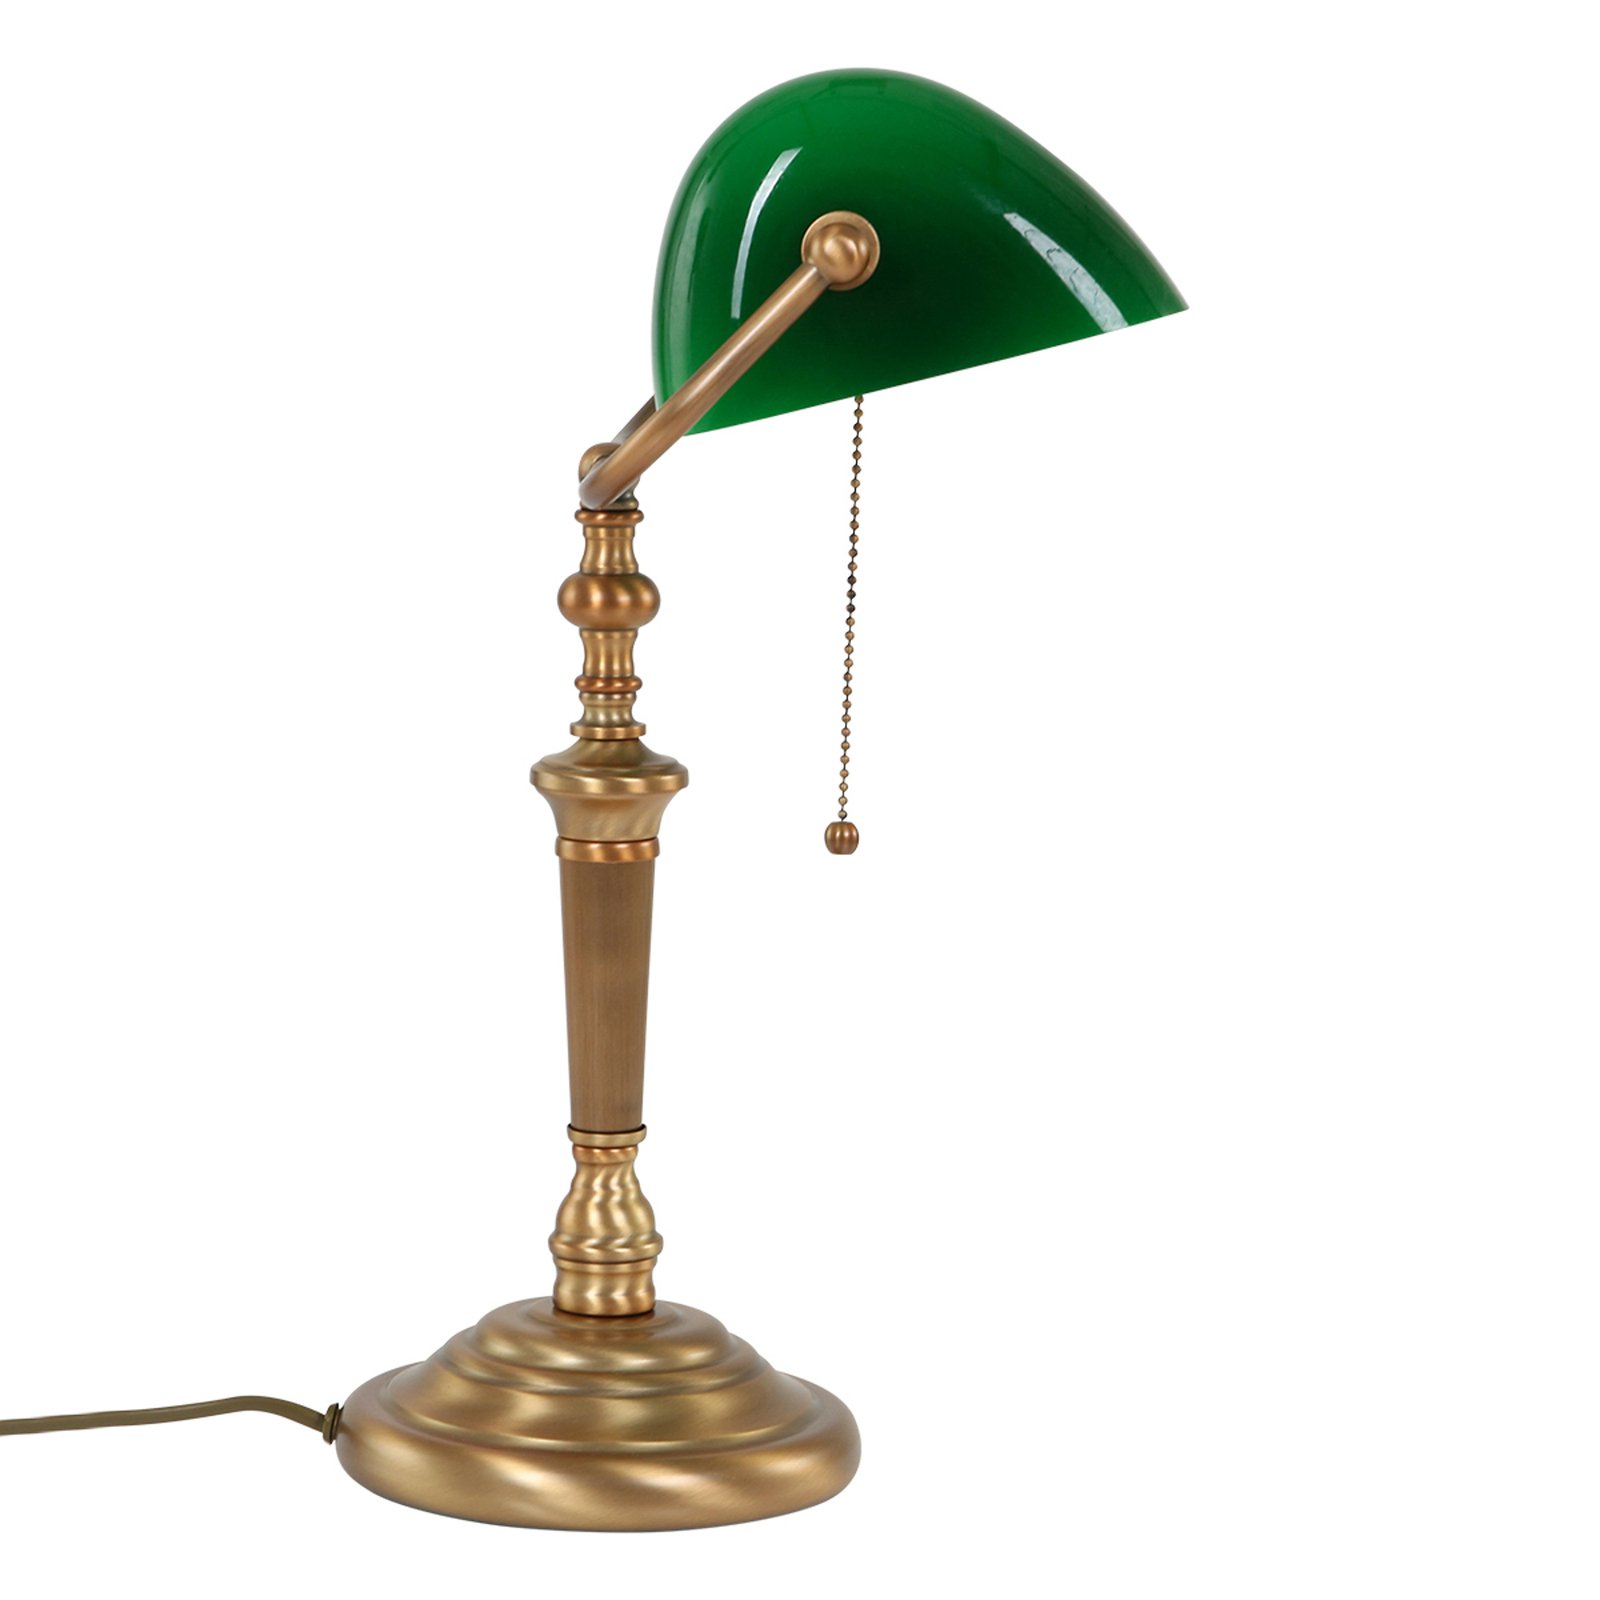 Schreibtischlampe Ancilla, Glasschirm, bronze/grün